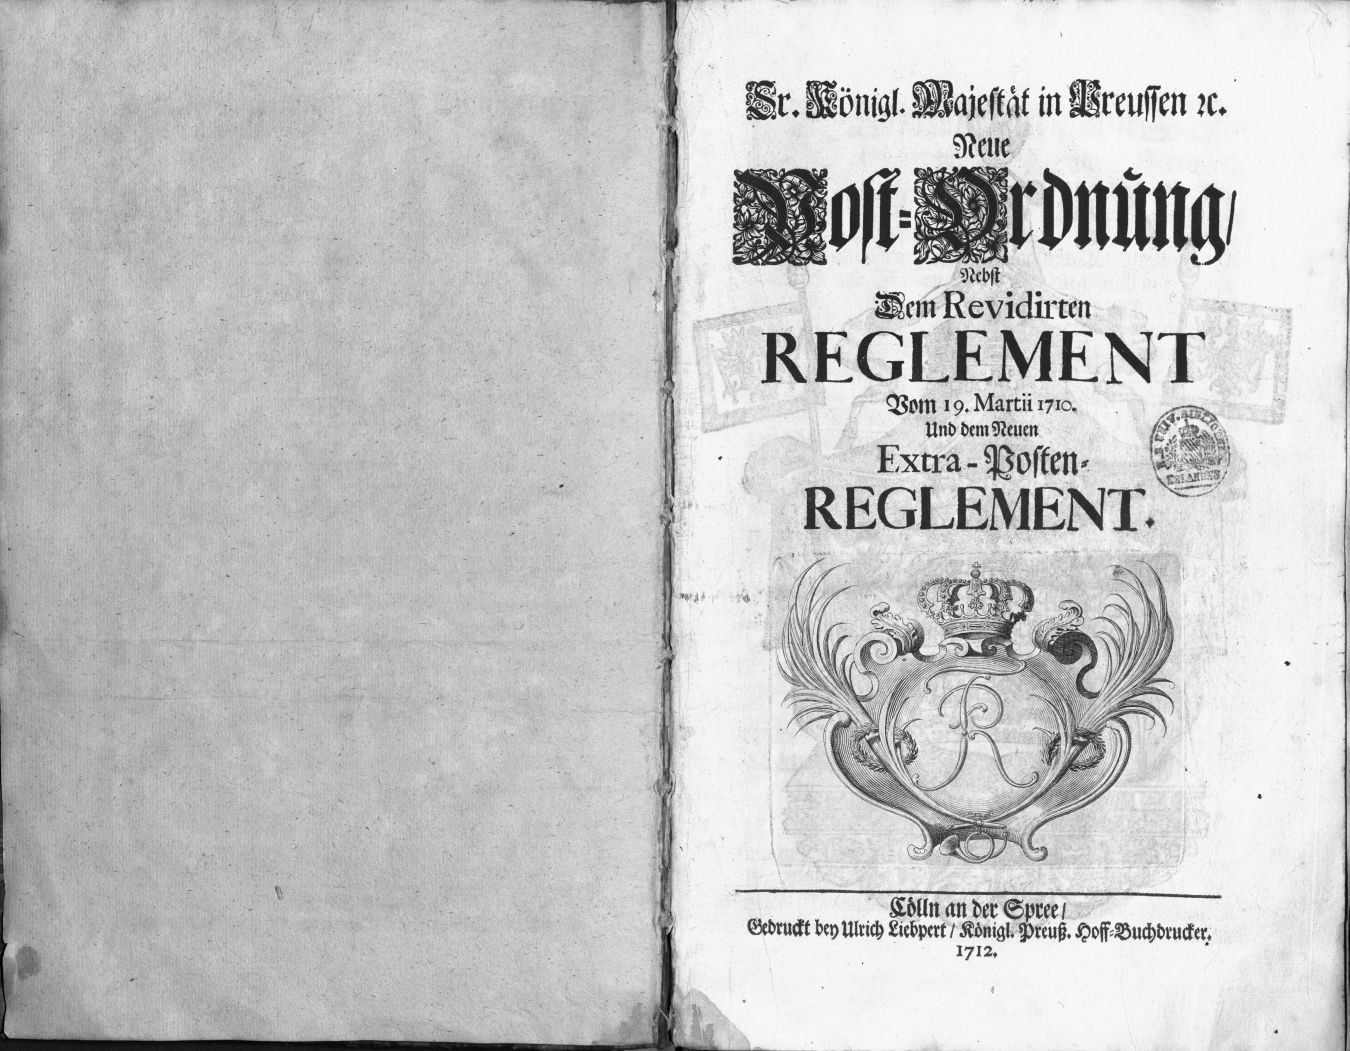 Die königlich-preußische Postordnung von 1712 –eine frühe Form des Datenschutzes. (Bild: Universitätsbibliothek Erlangen-Nürnberg)